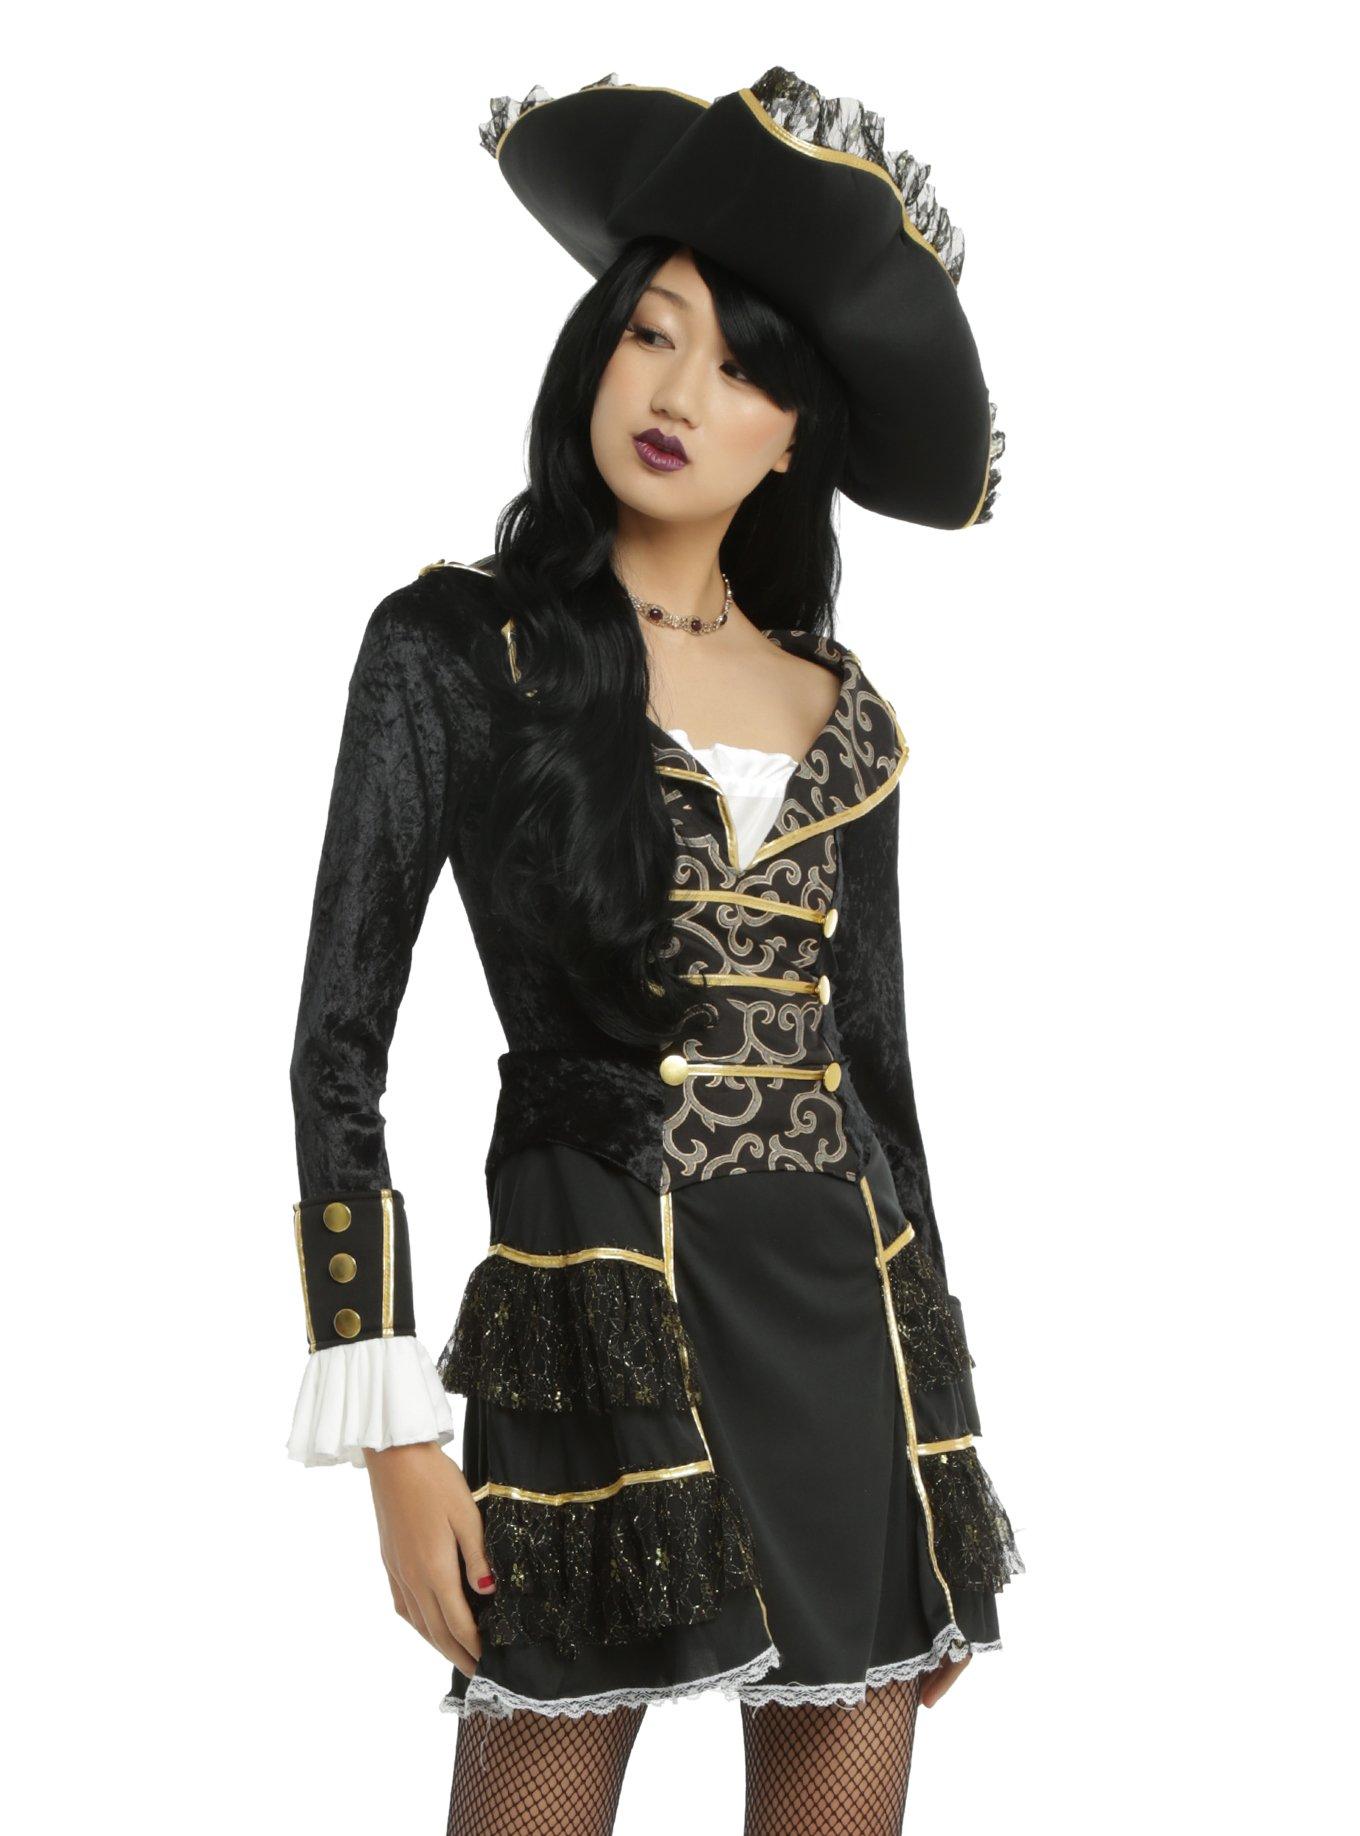 Pirate Captain Costume, BLACK, hi-res